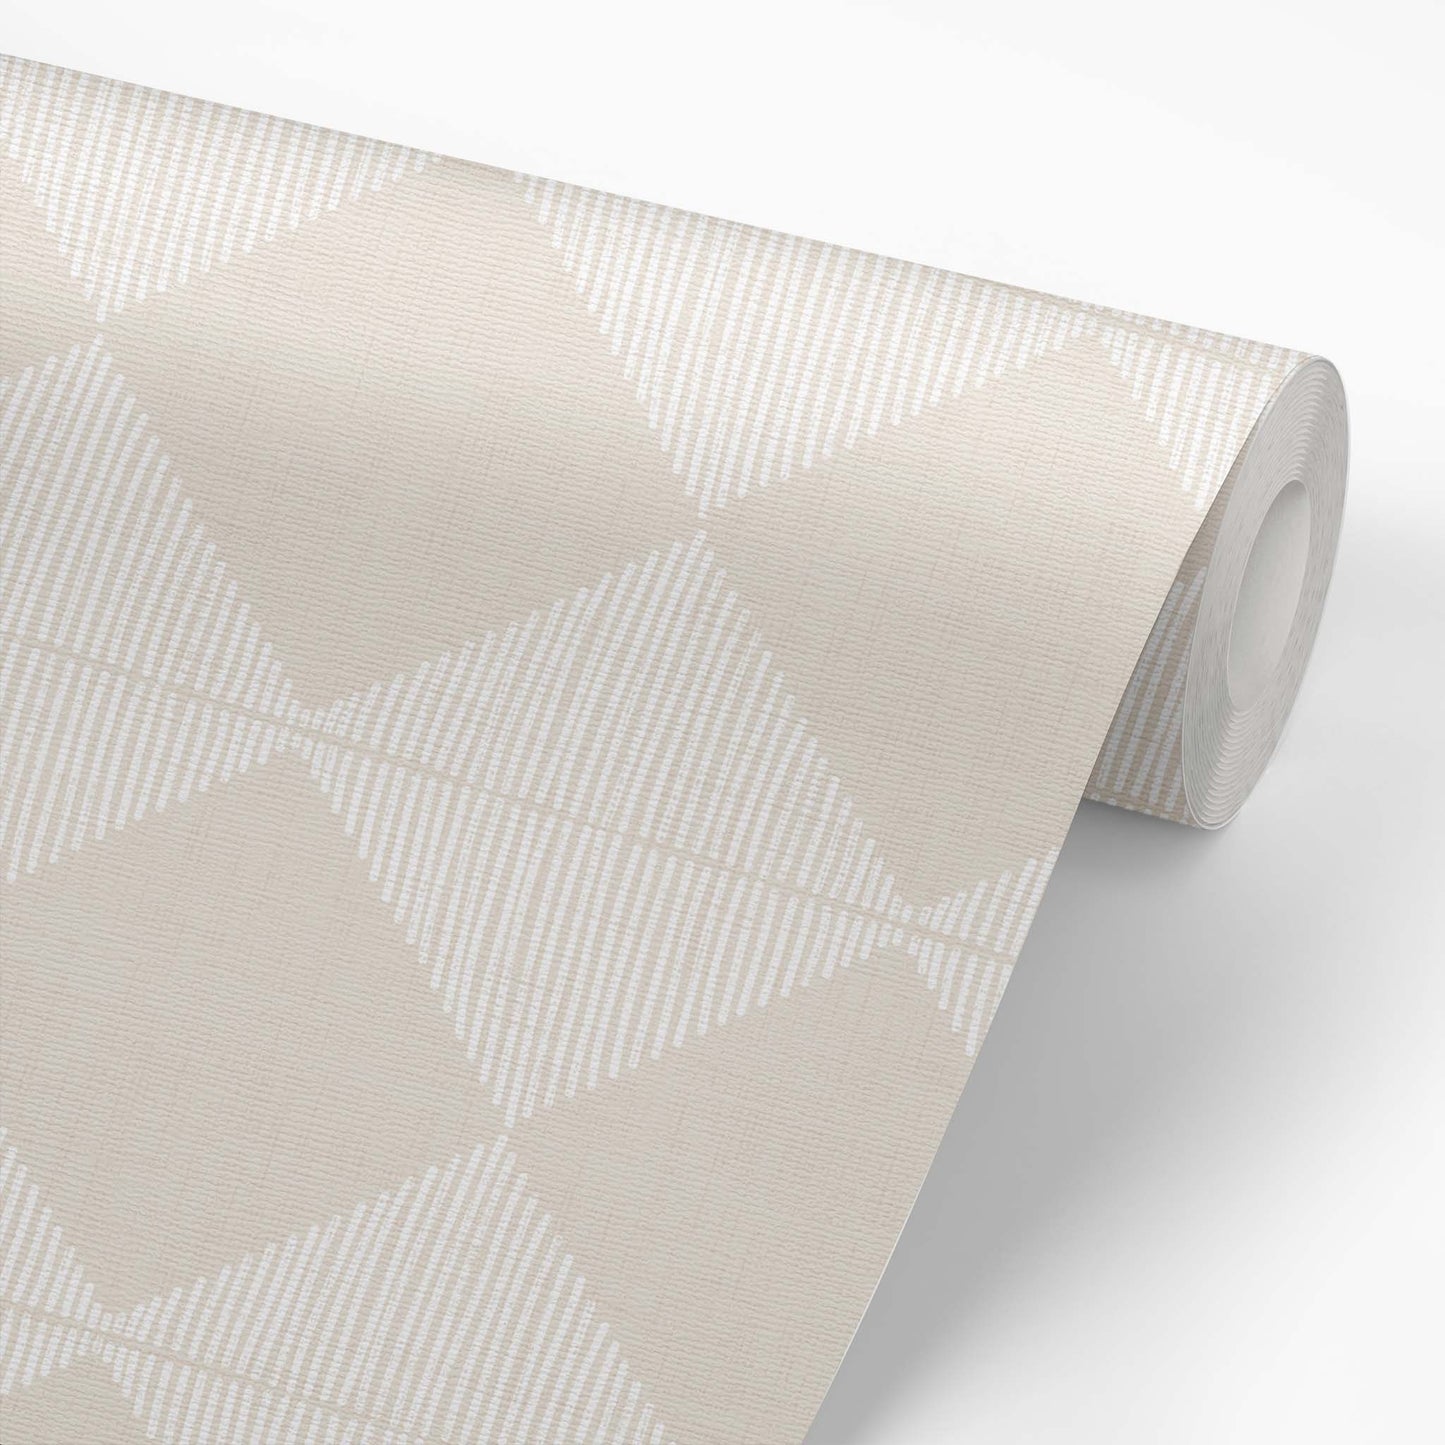 Antwan Checkerboard Wallpaper - Beige